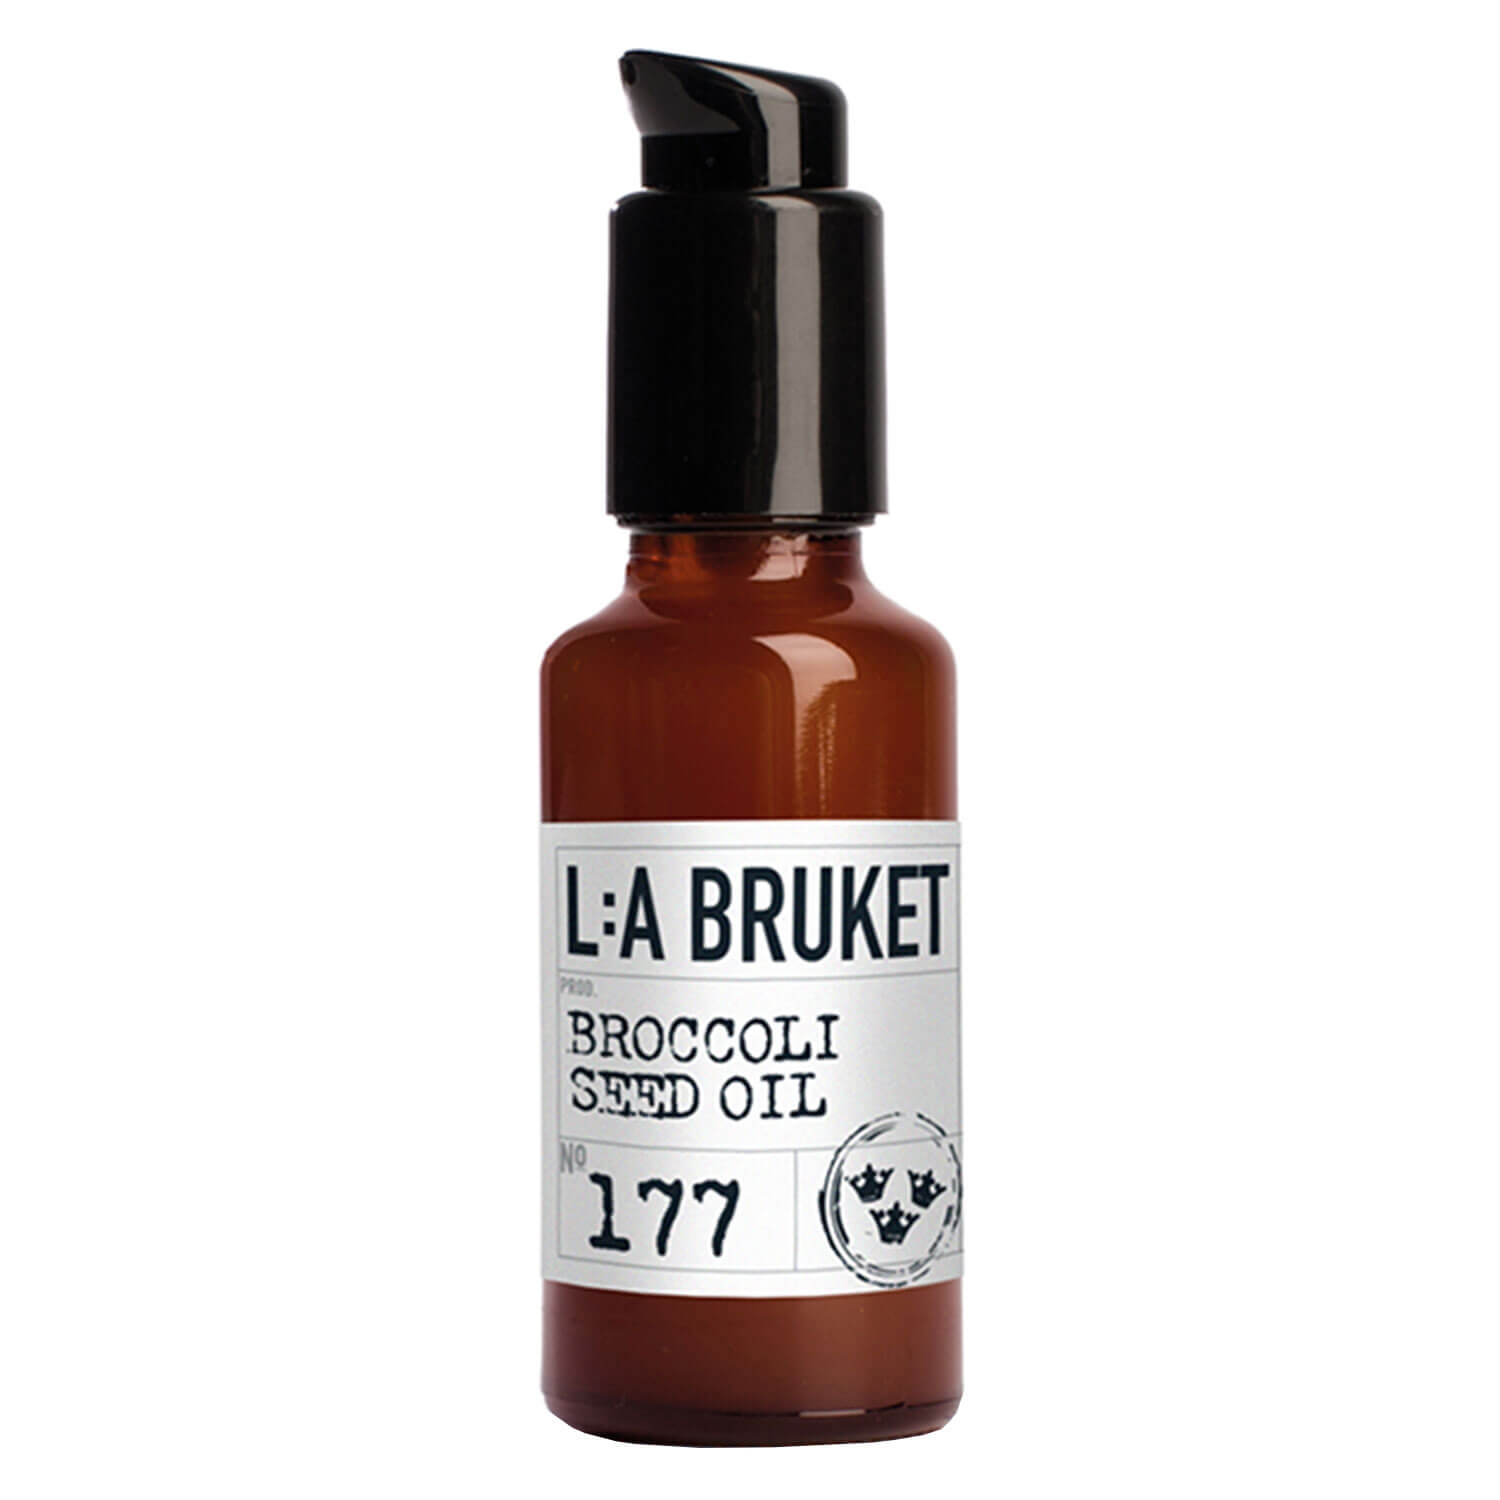 Produktbild von L:A Bruket - No.177 Broccoli Seed Oil